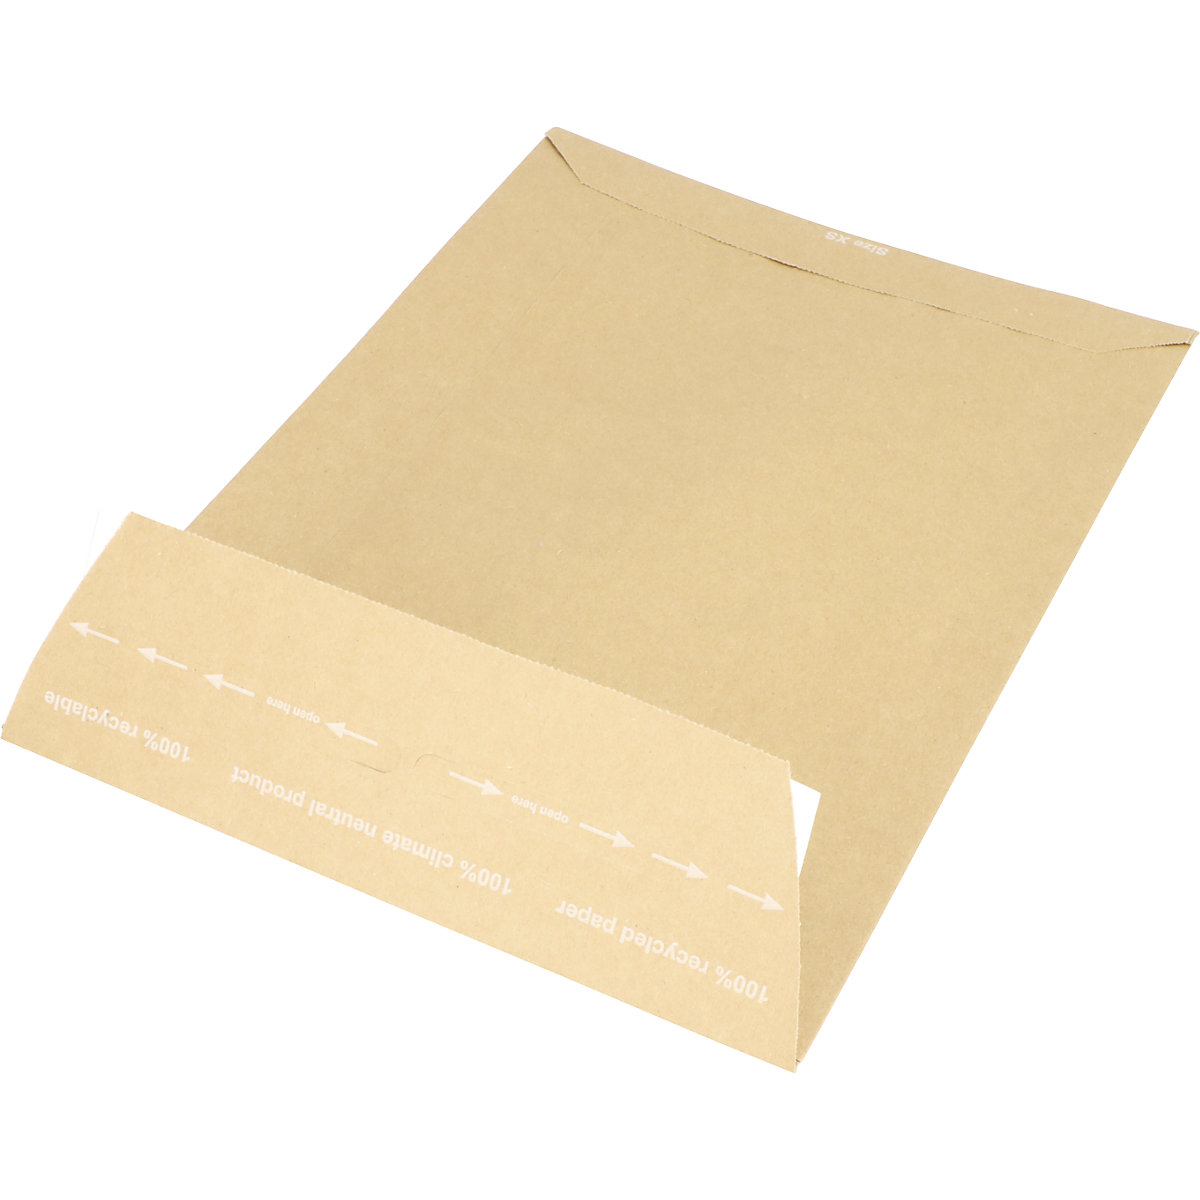 Versandtasche aus Papier E-Commerce terra, retourengeeignet, LxB 350 x 250 mm, VE 250 Stk-4